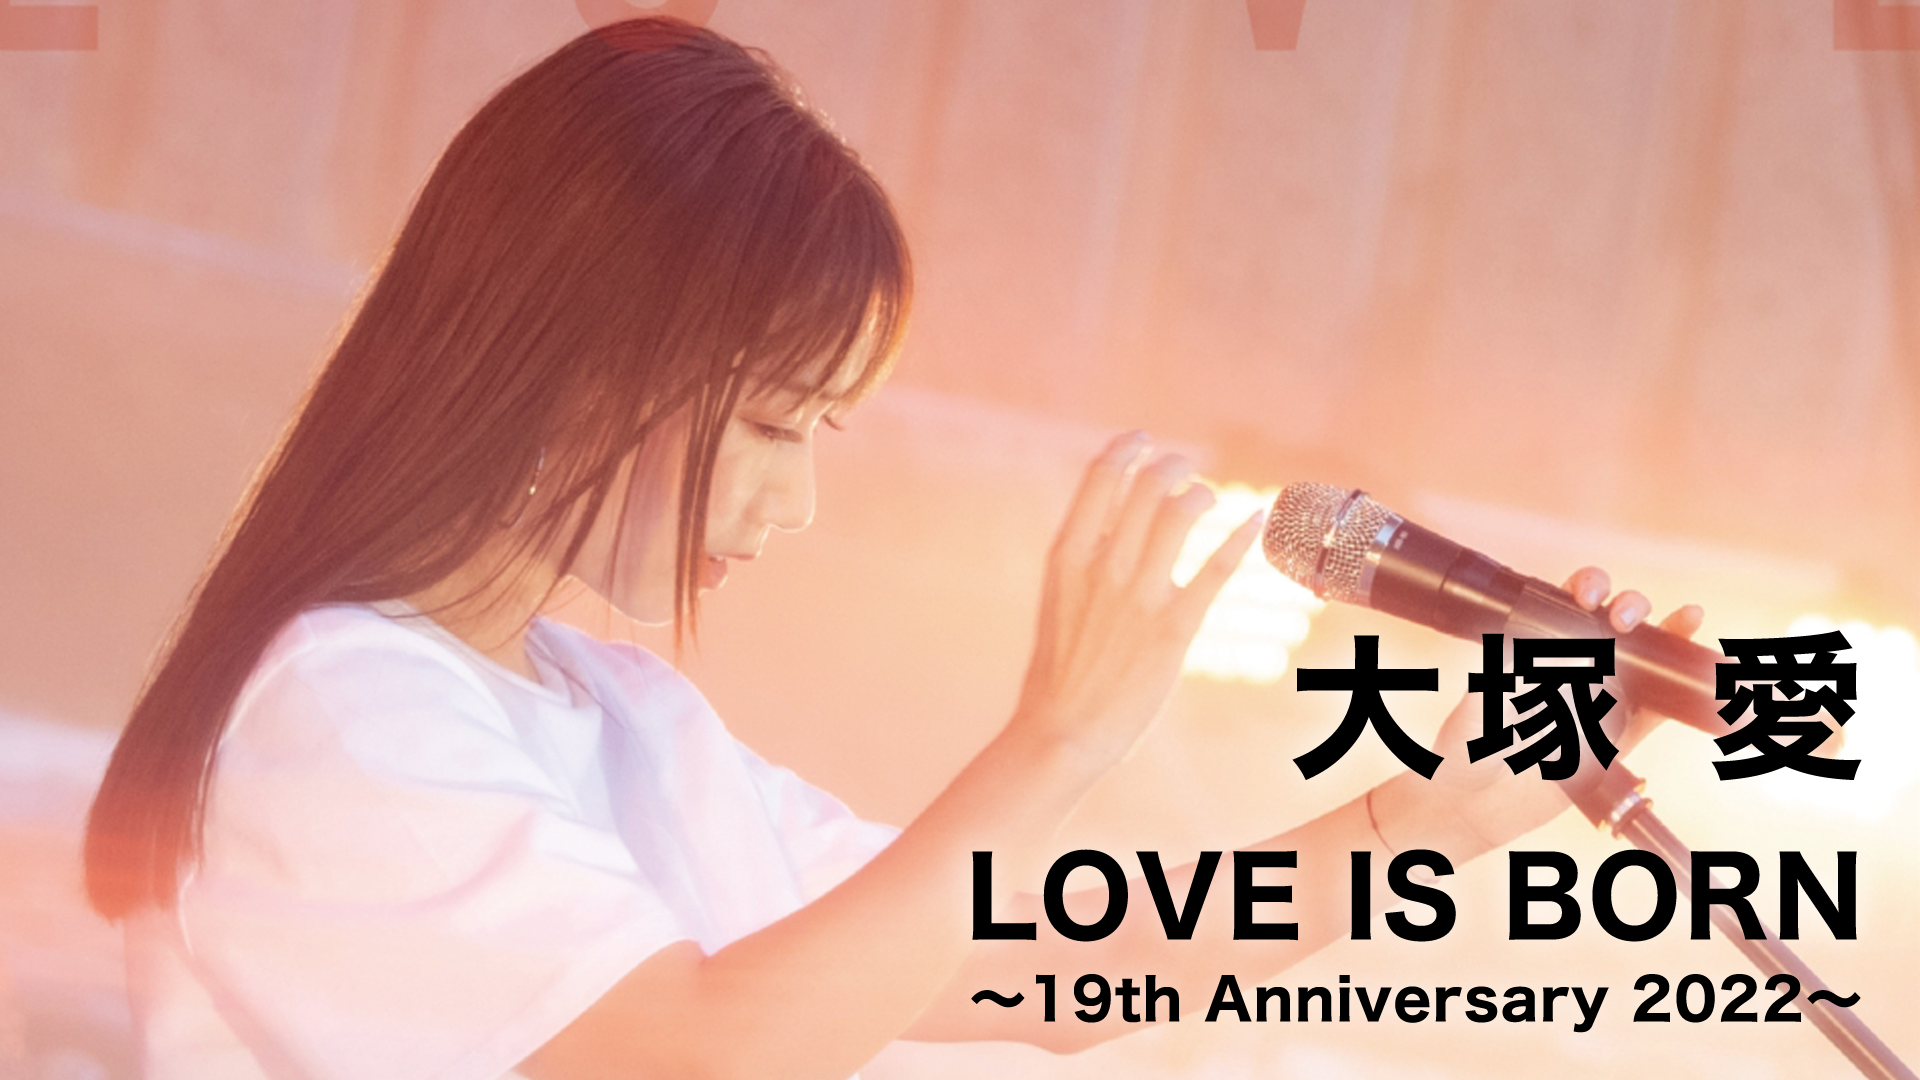 大塚 愛「LOVE IS BORN ～19th Anniversary 2022～」(音楽・ライブ / 2022) - 動画配信 | U-NEXT  31日間無料トライアル